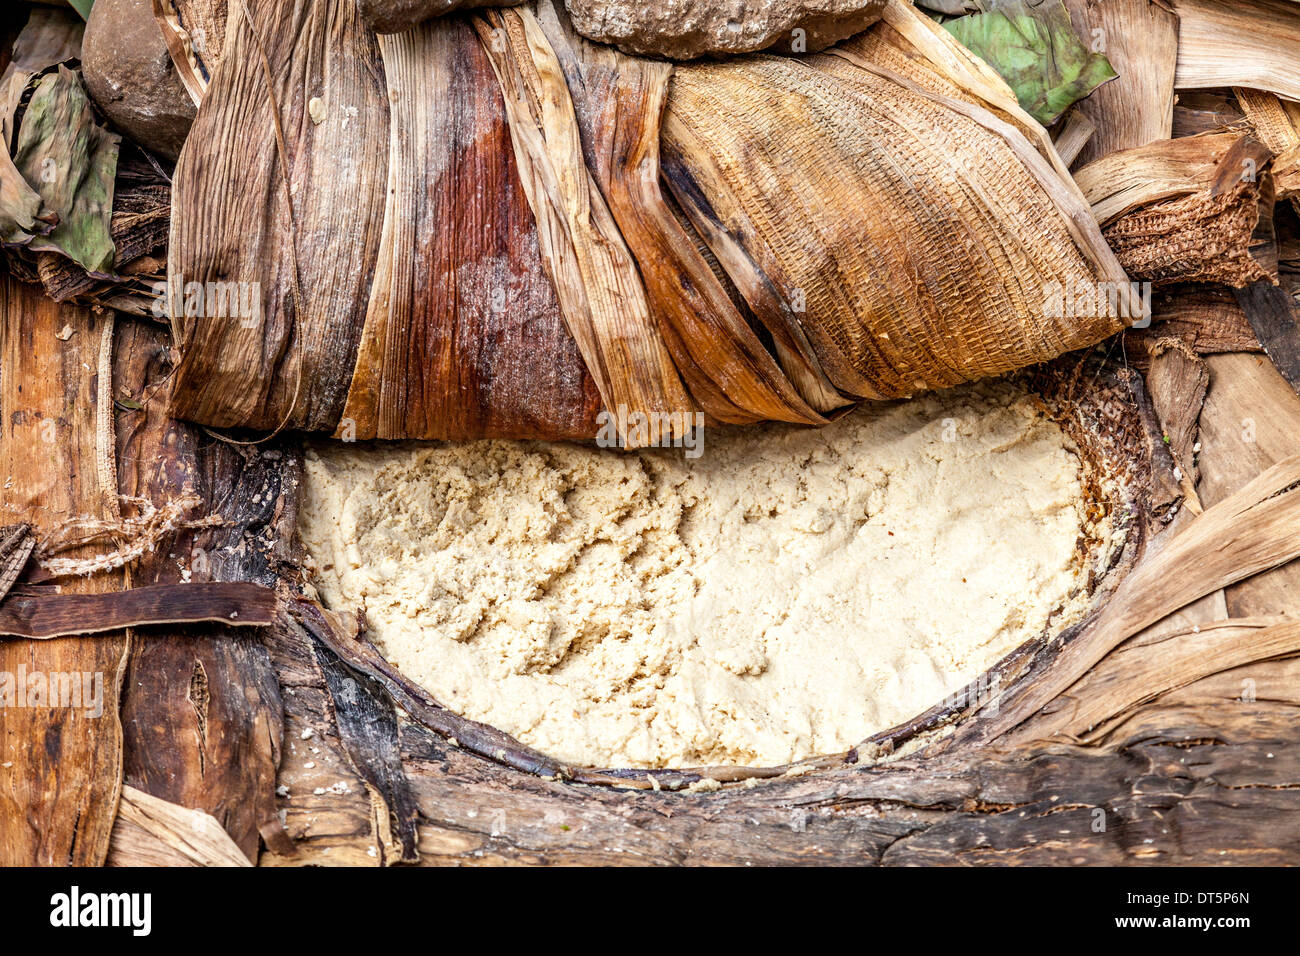 Kocho Dough (Unleavened Bread) Made from The False Banana Tree, Hayzo Village, Arba Minch, Ethiopia Stock Photo